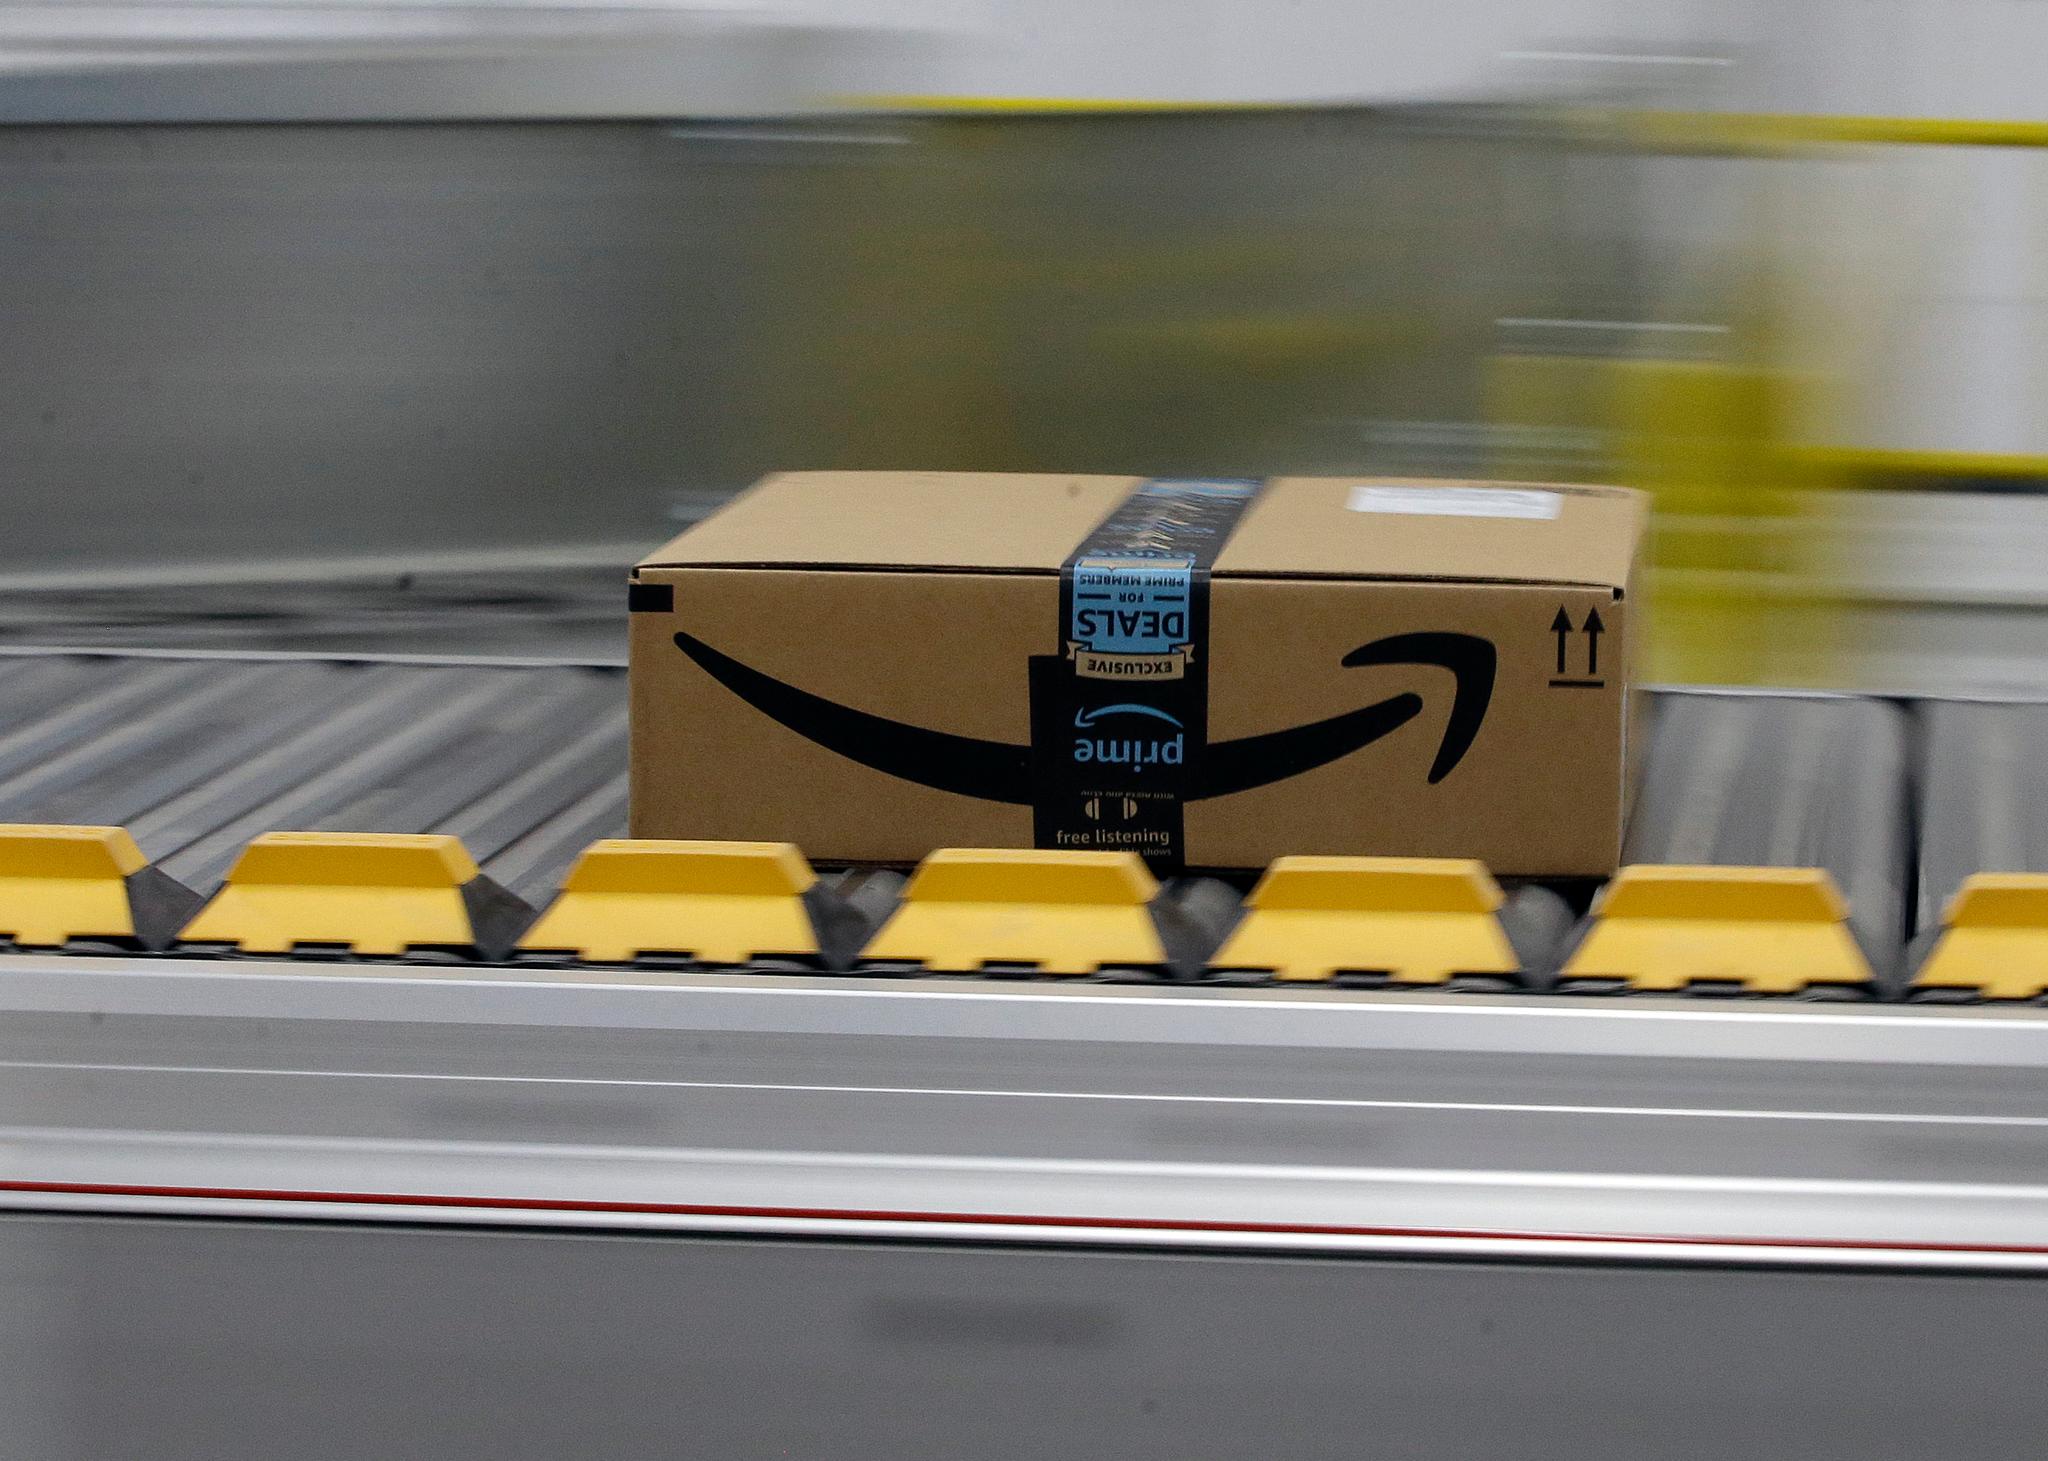 Amazon package on conveyor belt